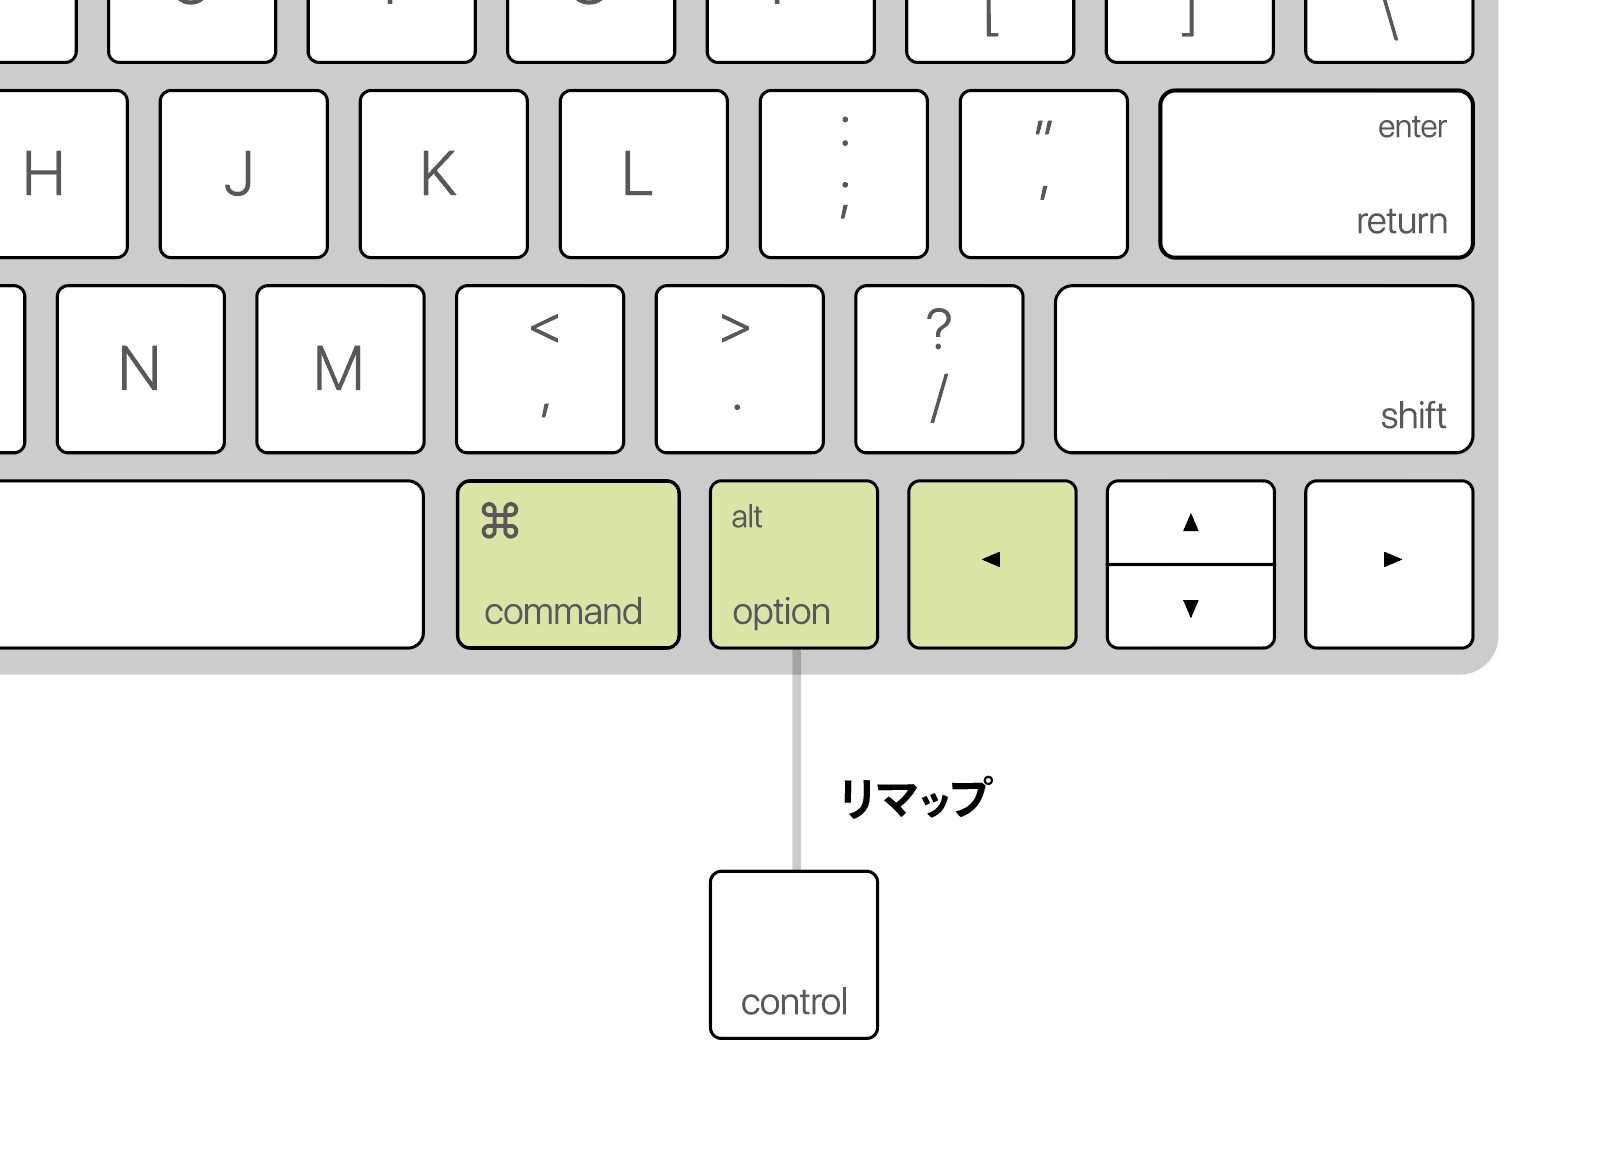 Illustratorの整列のキーボードショートカットを設定するとき、Keyboard Maestroの「tapped twice」を利用してキーボードショートカットを増やさないこの記事を書いた人サイト内検索noteTwitterYouTubeカテゴリリンクアピアランス集書籍情報誤字脱字の報告フォーム